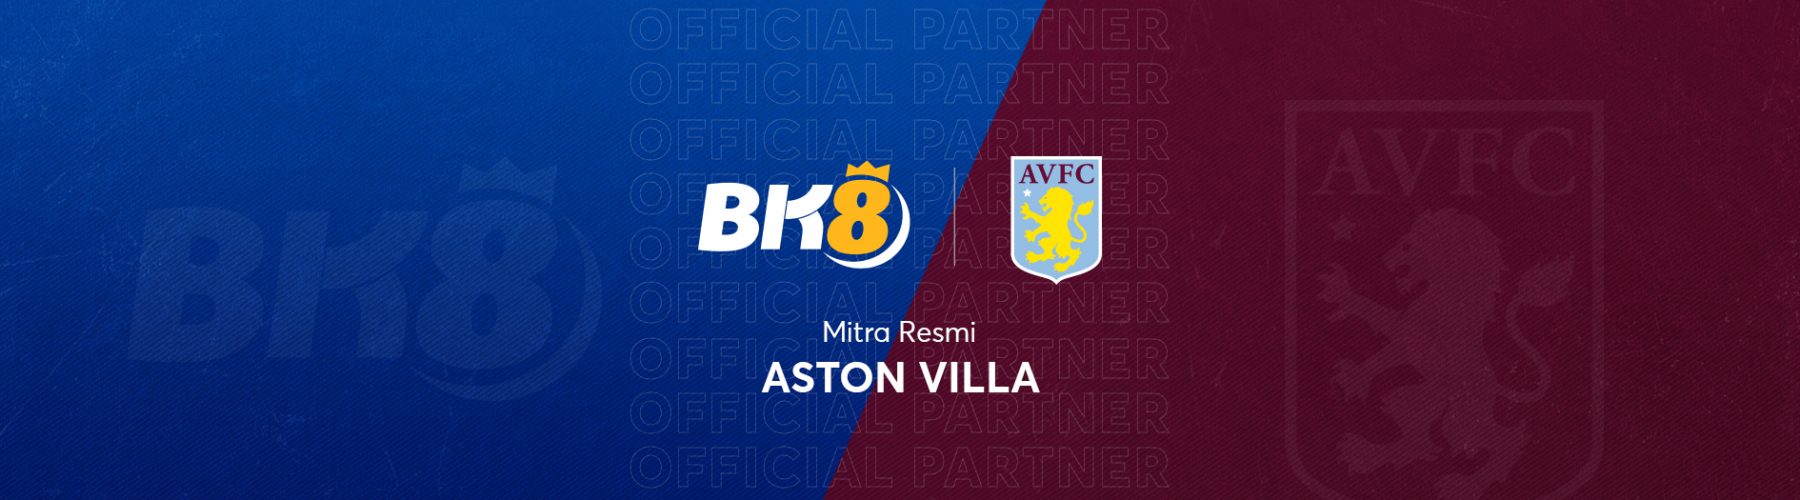 BK8 partner resmi Aston Villa